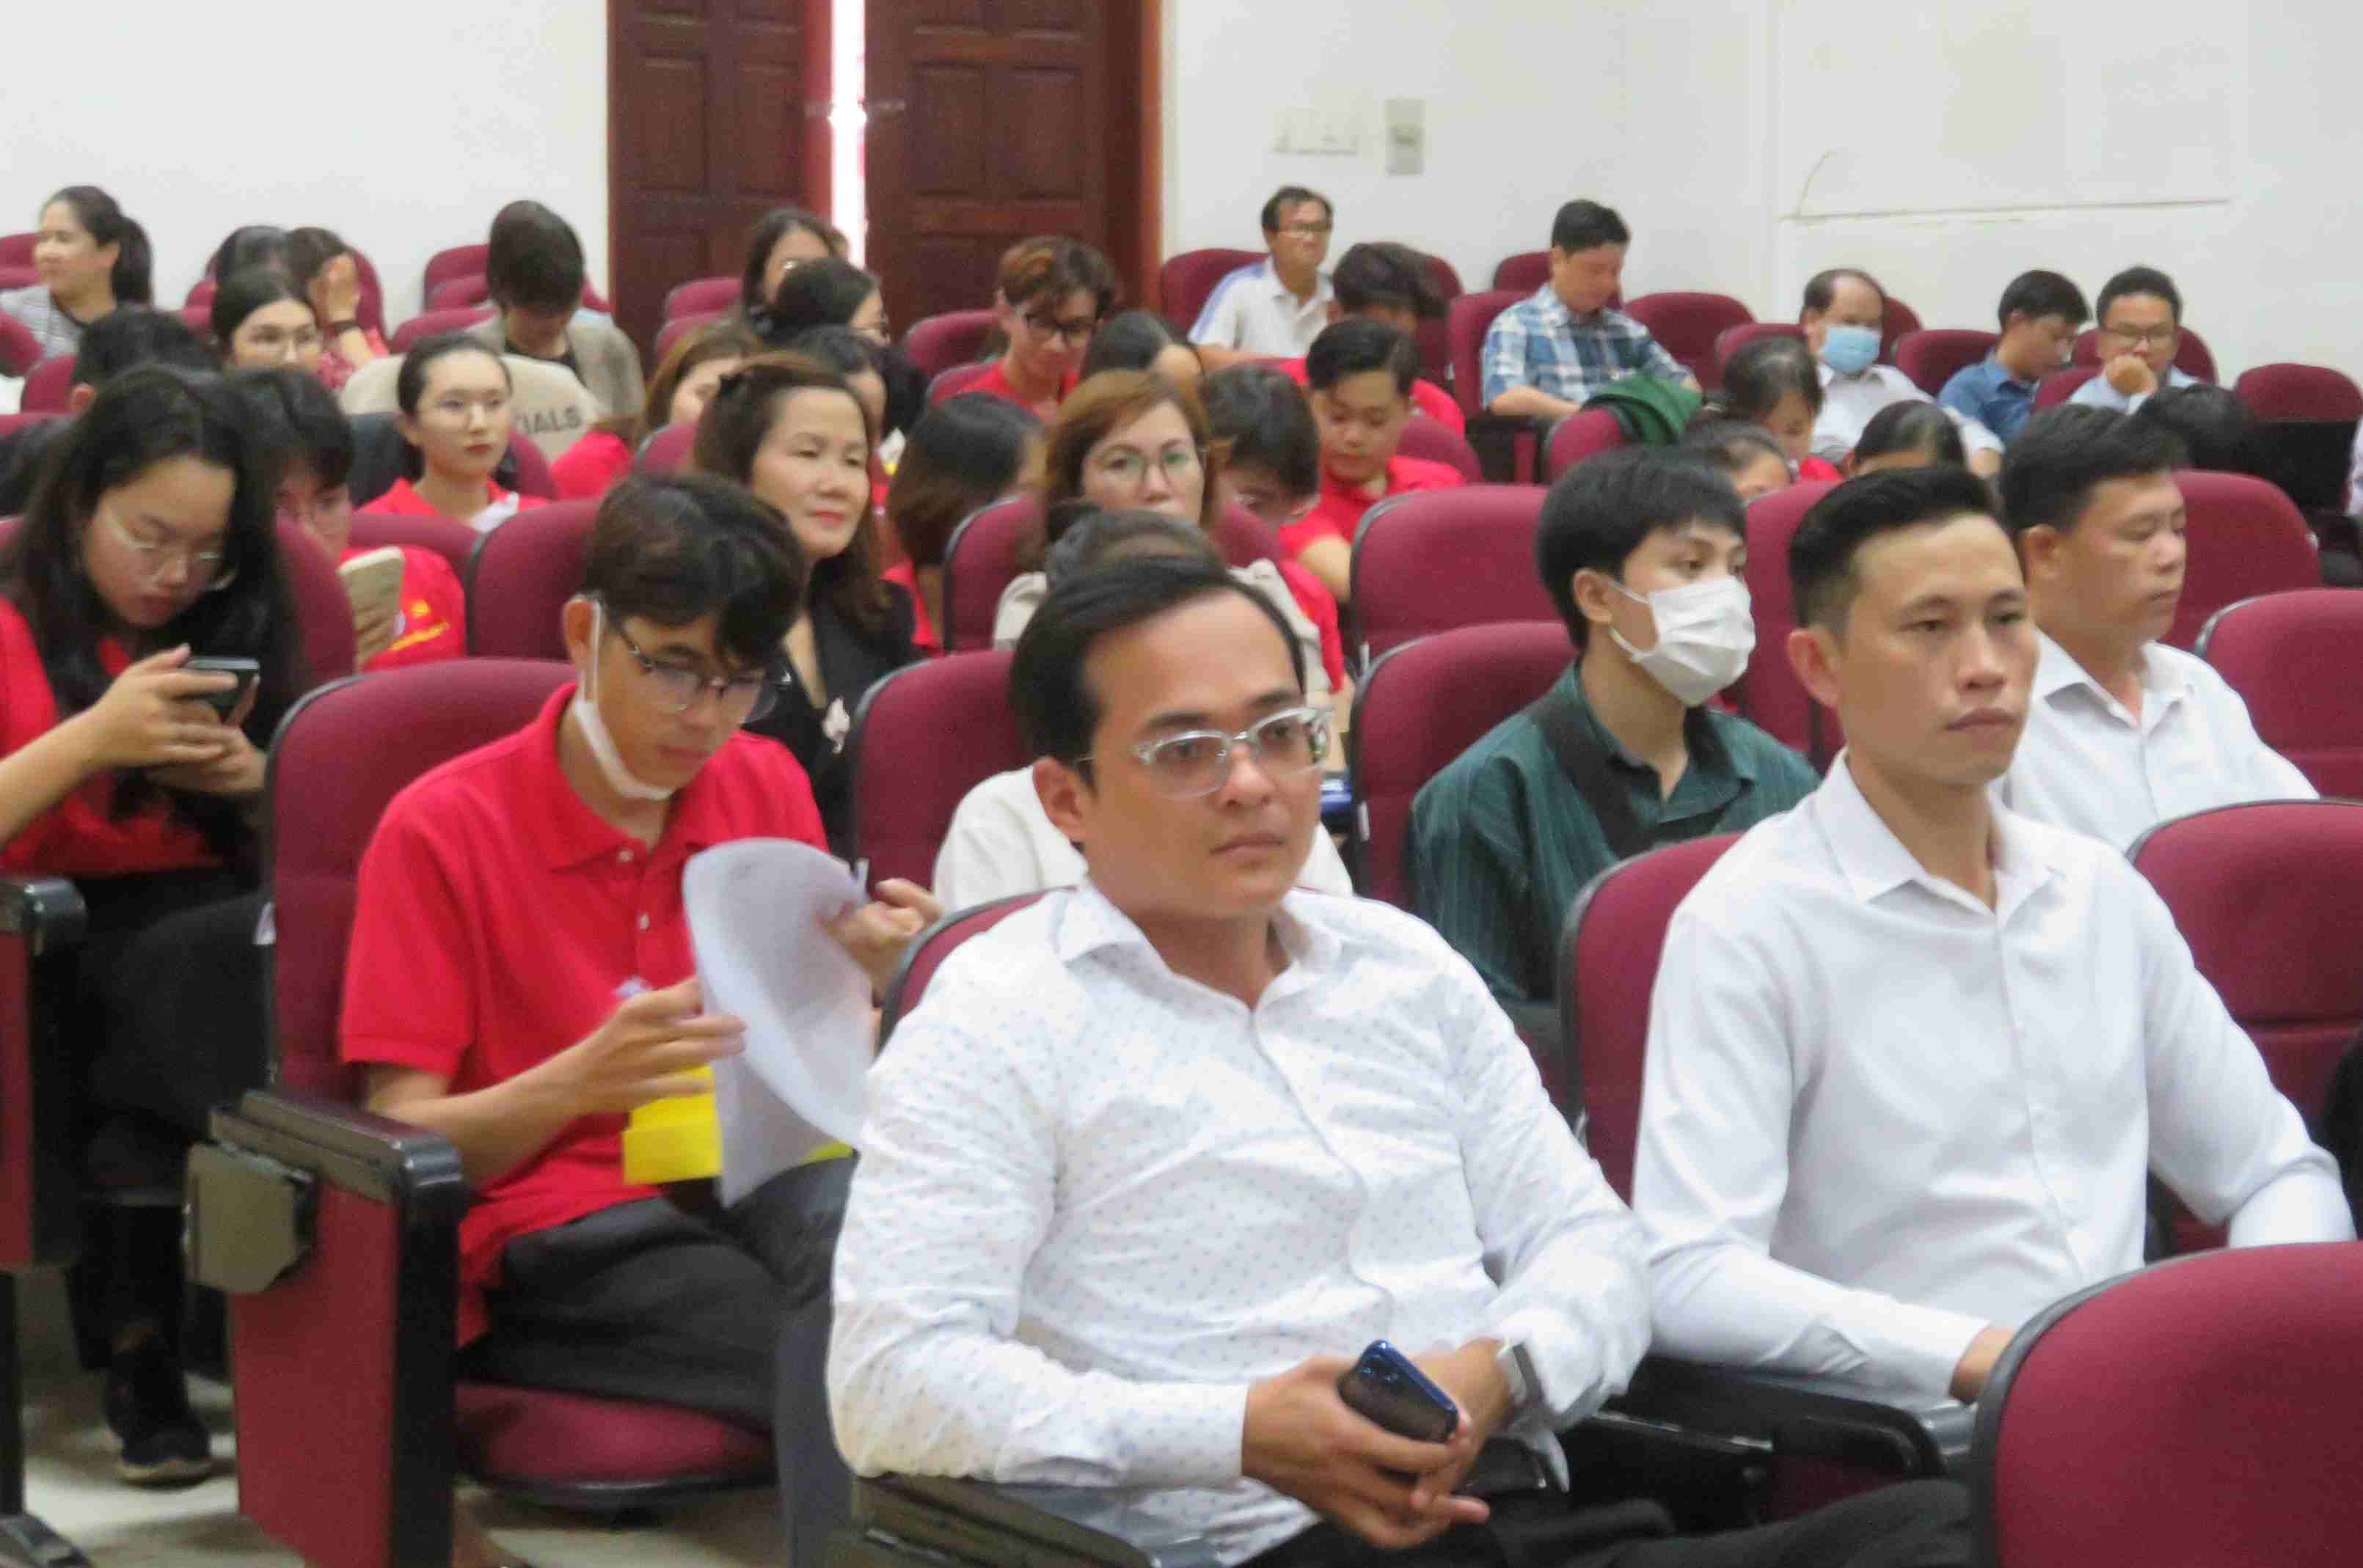 Đảng bộ Trường Đai học Văn hóa TP. Hồ Chí Minh đạt tổ chức Đảng hoàn thành xuất sắc nhiệm vụ, Đảng bộ trong sạch, vững mạnh tiêu biểu 3 năm liền 2020, 2021 và 2022